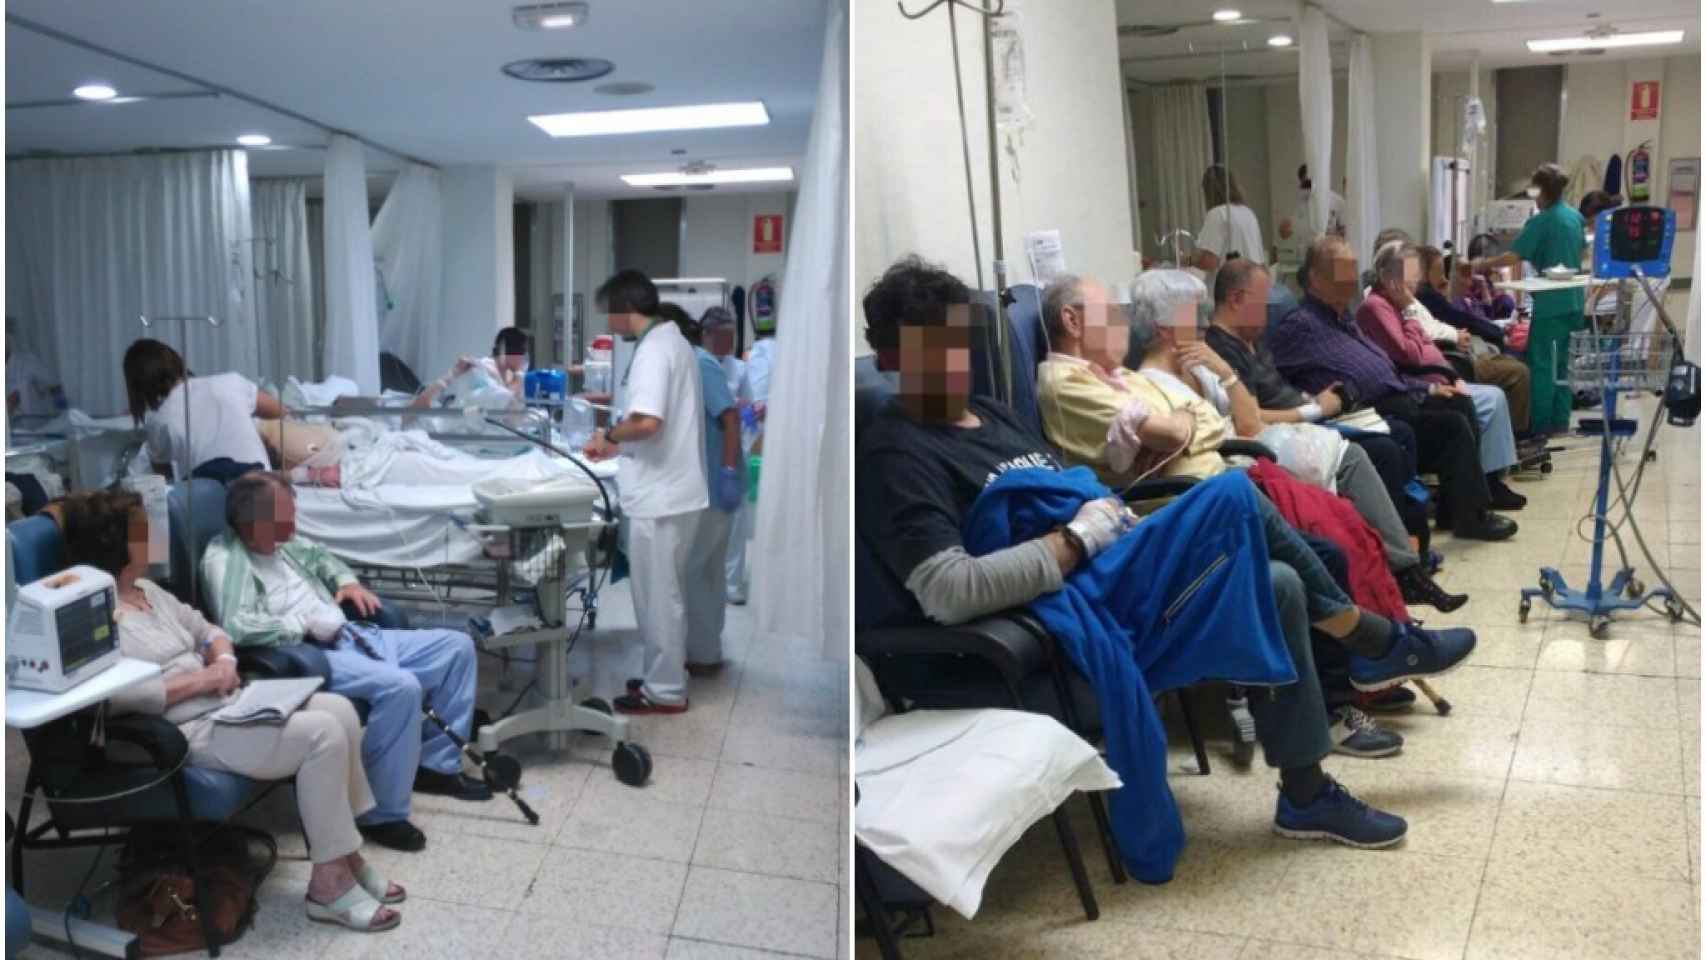 Dos imágenes que recogen el aspecto de las salas de urgencias